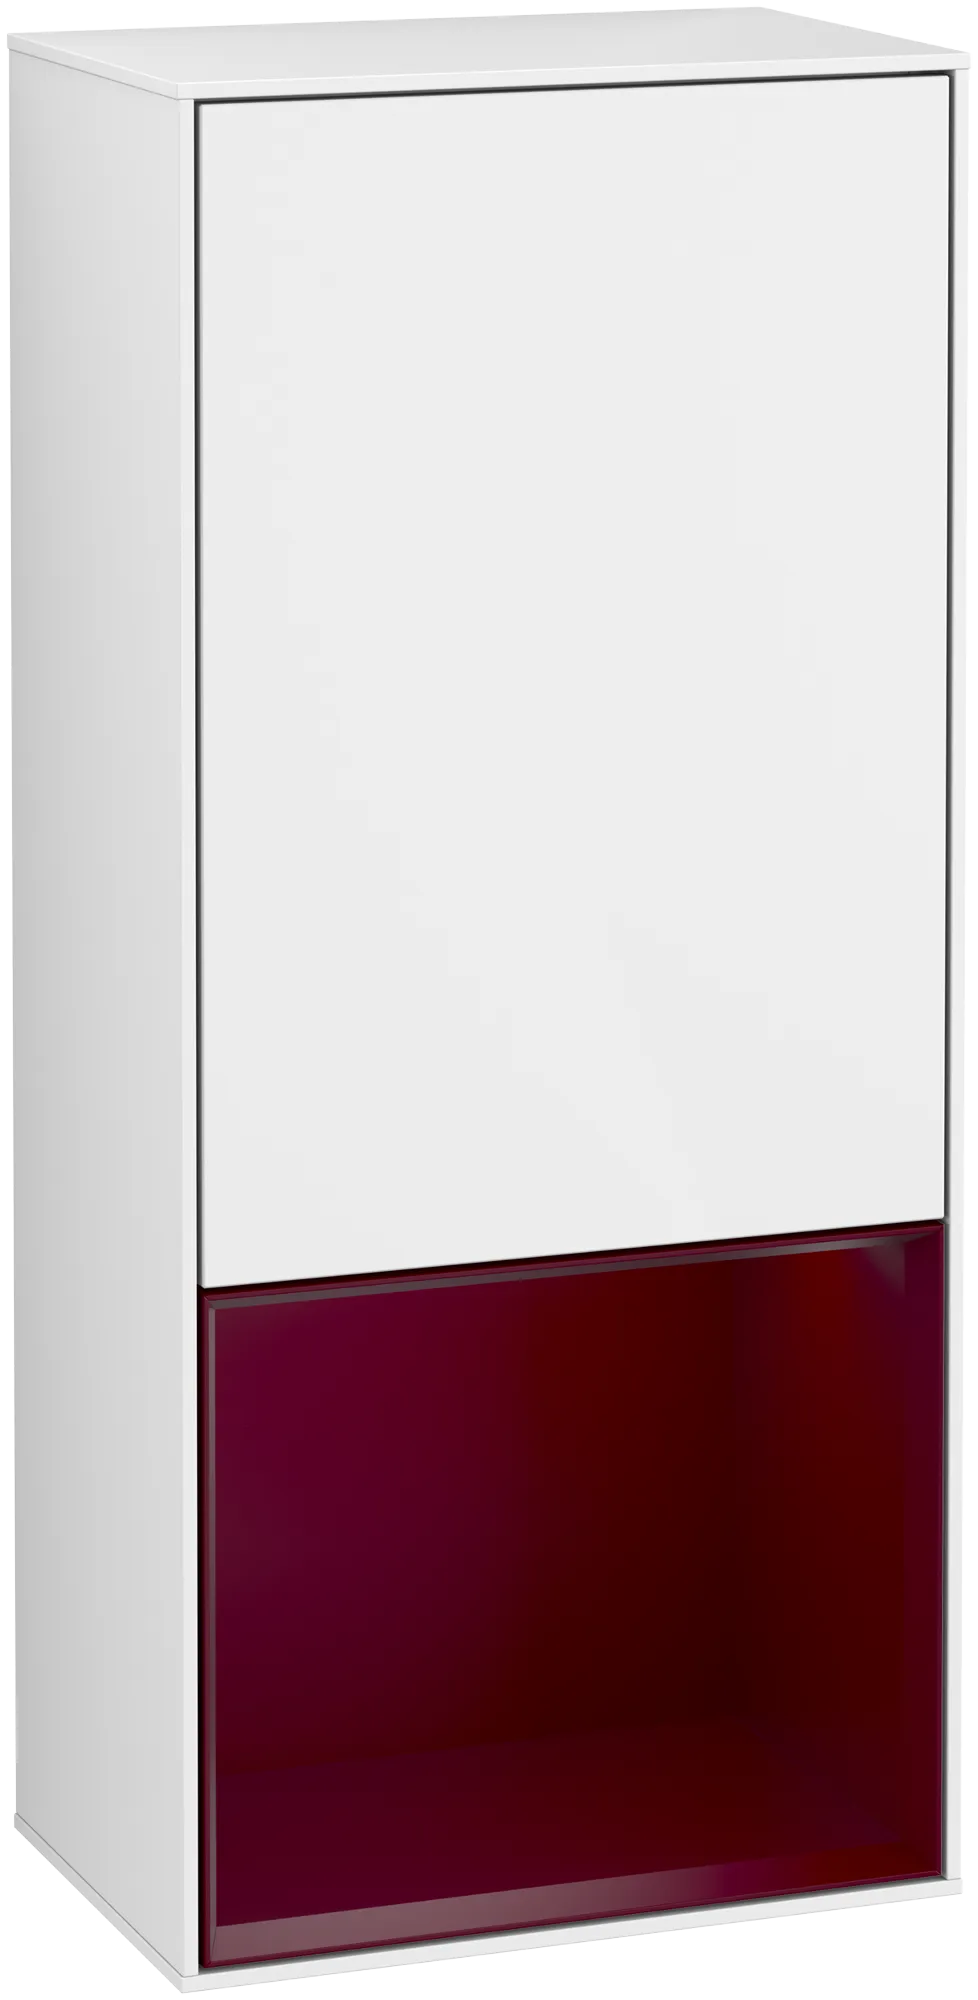 Bild von VILLEROY BOCH Finion Seitenschrank, mit Beleuchtung, 1 Tür, 418 x 936 x 270 mm, Glossy White Lacquer / Peony Matt Lacquer #G550HBGF